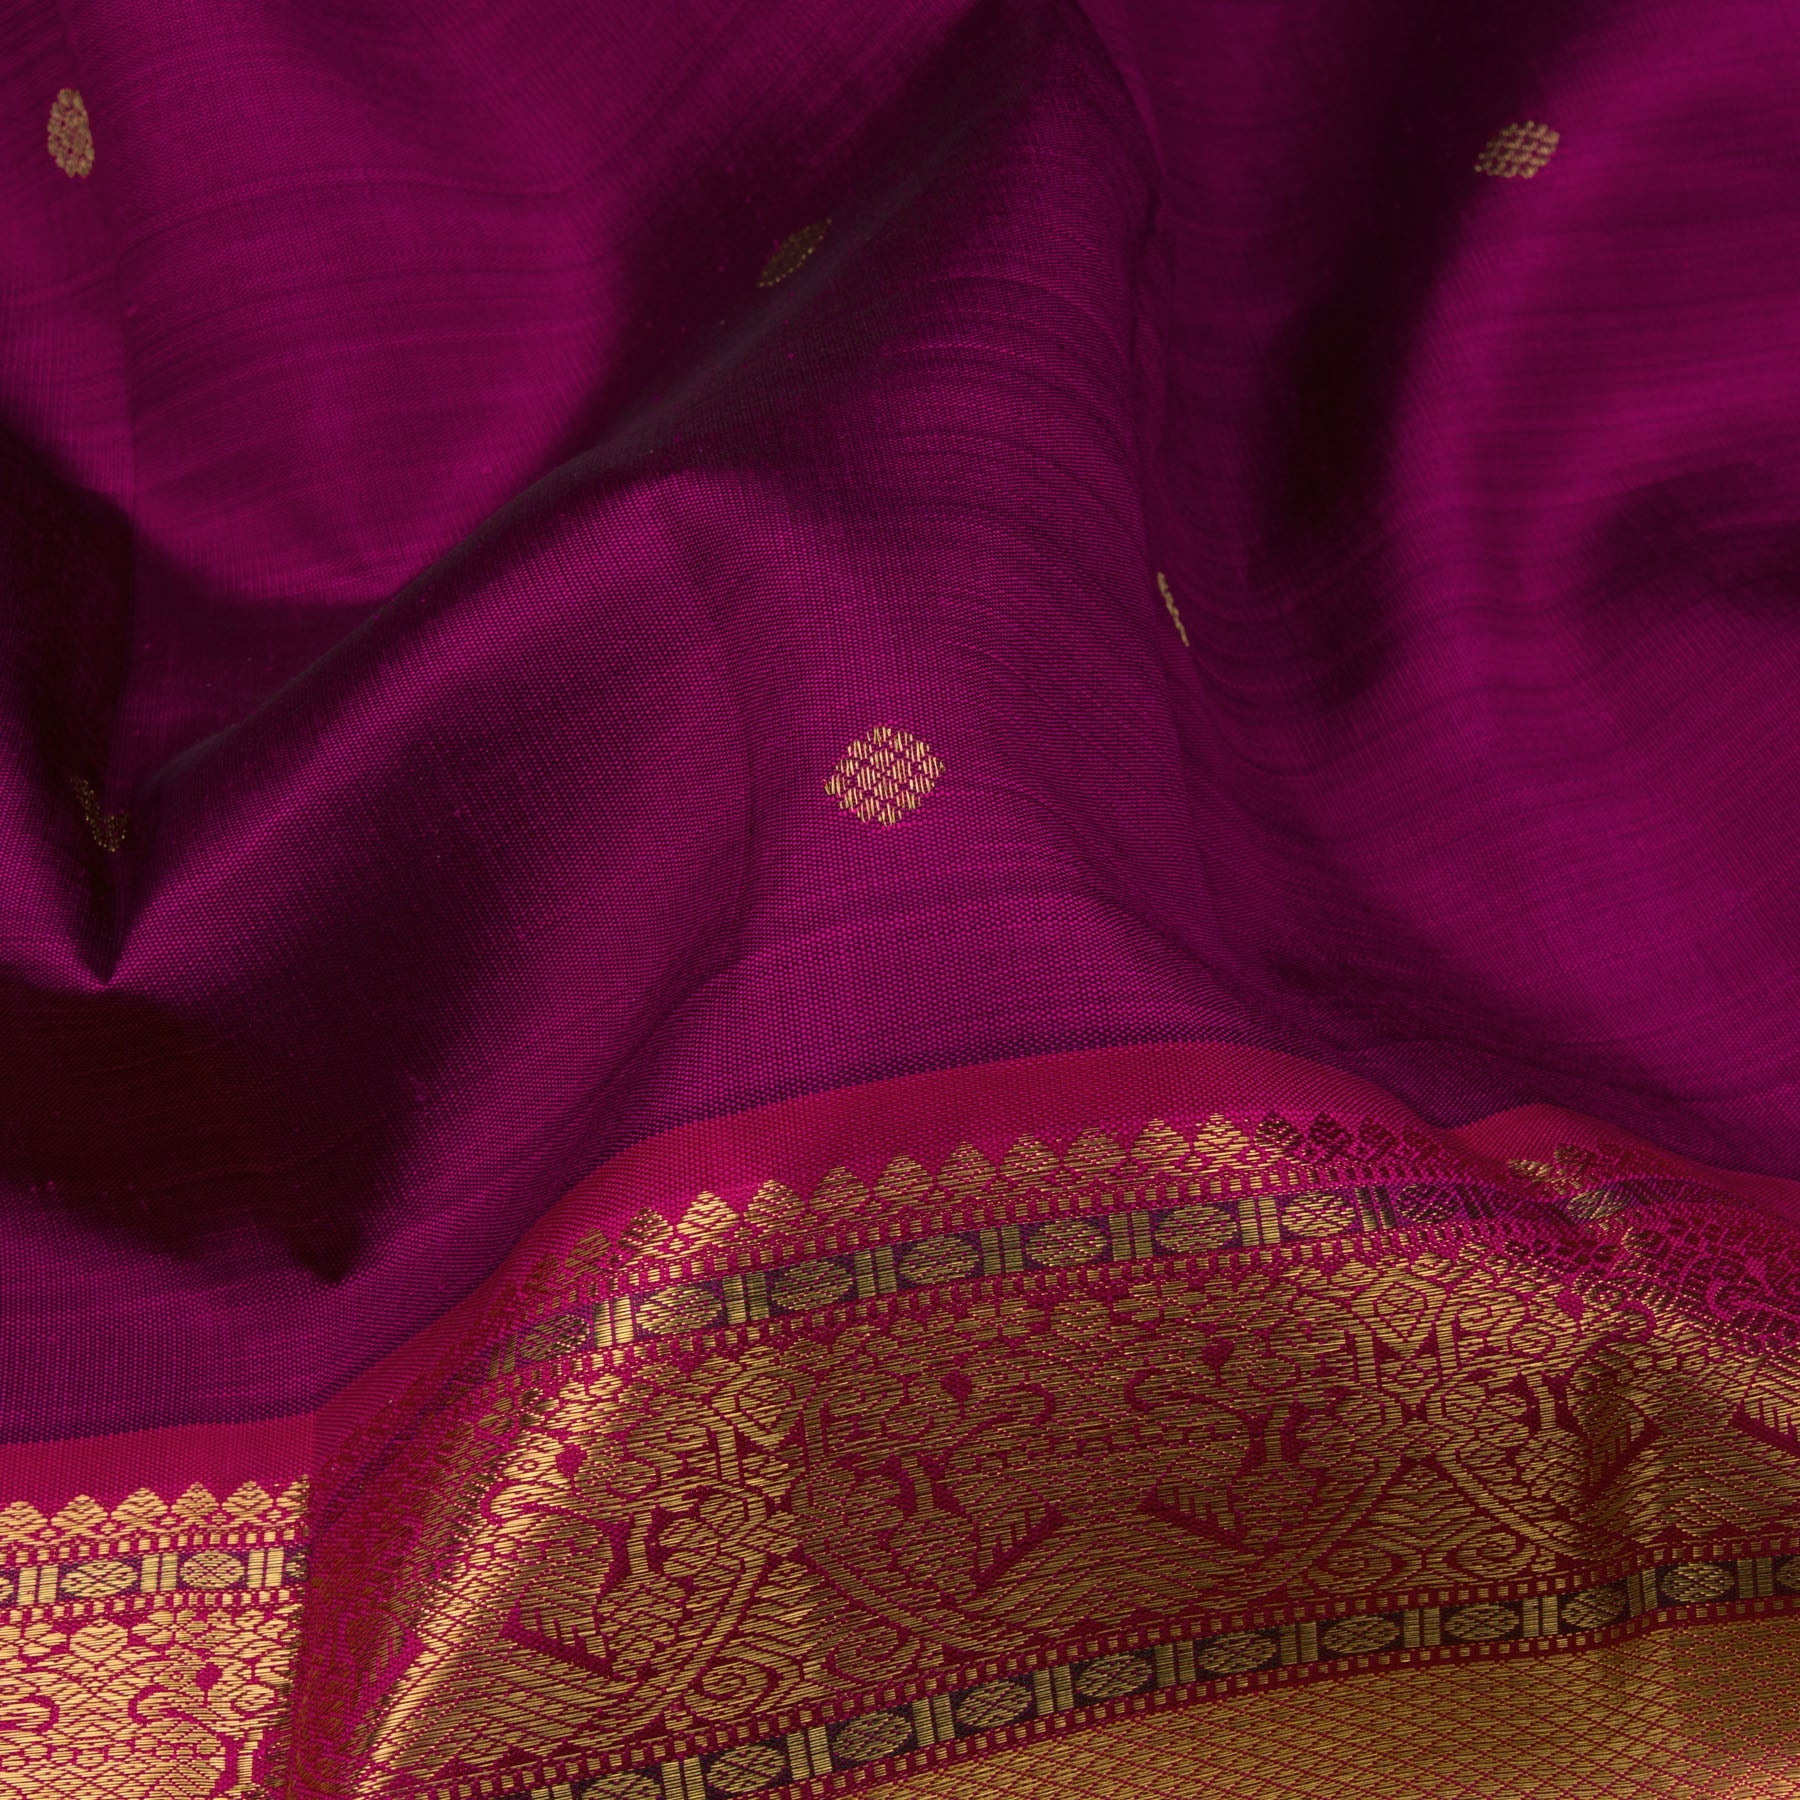 Kanakavalli Kanjivaram Silk Sari 23-110-HS001-02186 - Fabric View